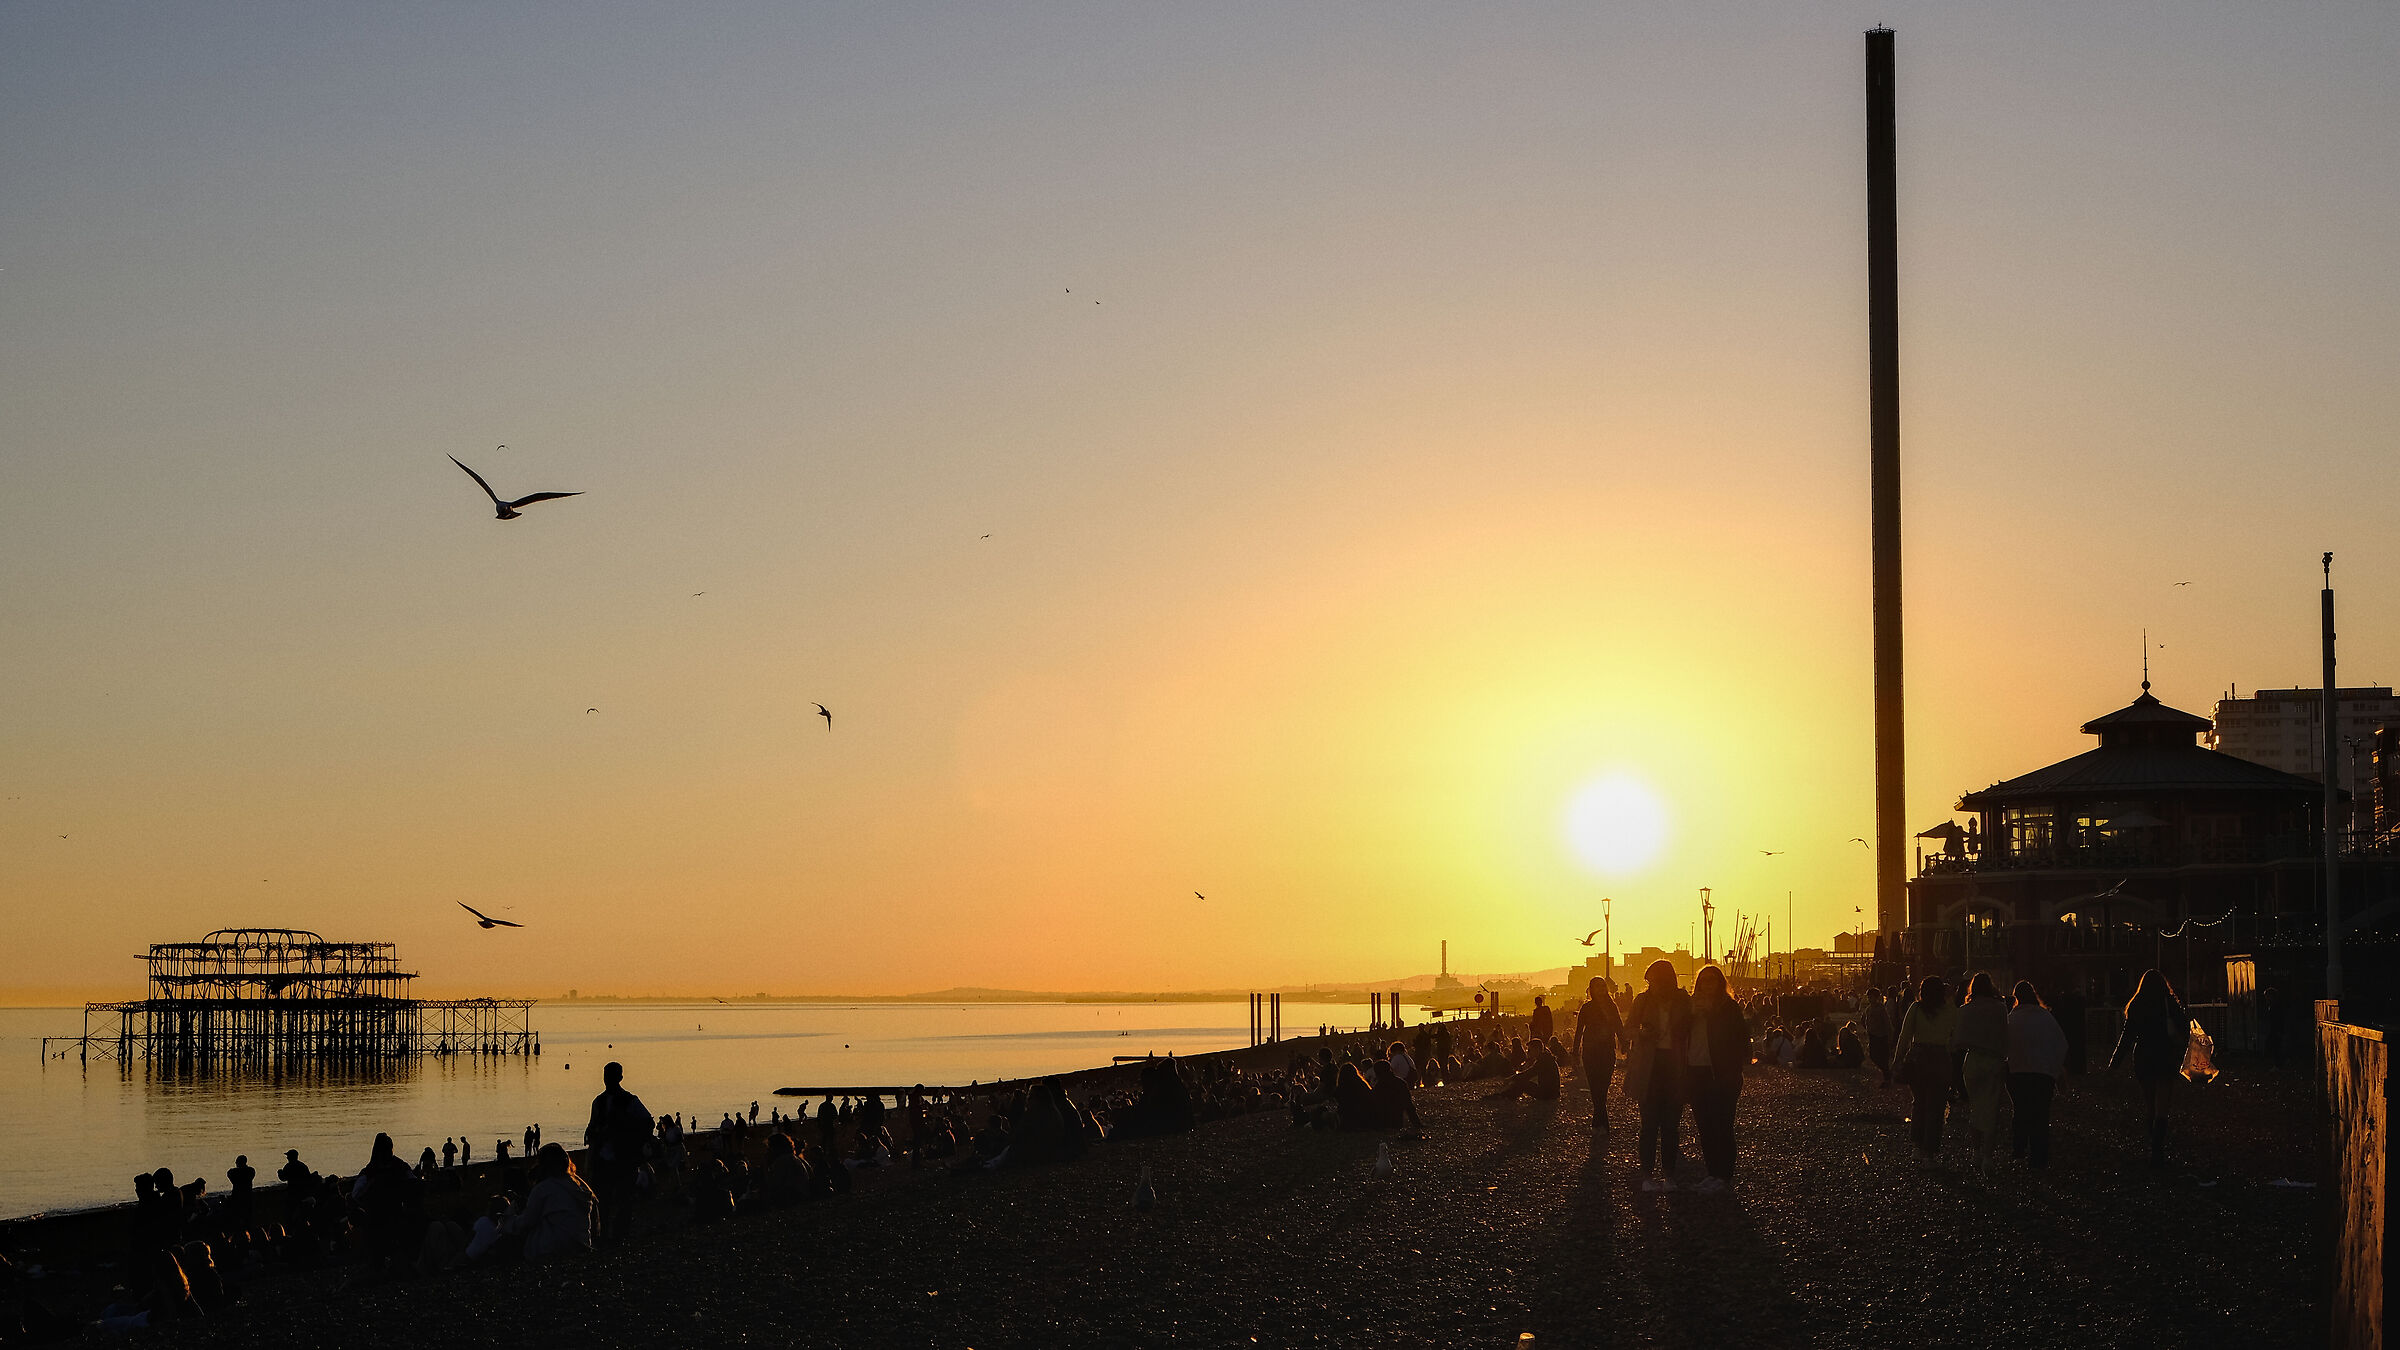 Brighton beach sunset...